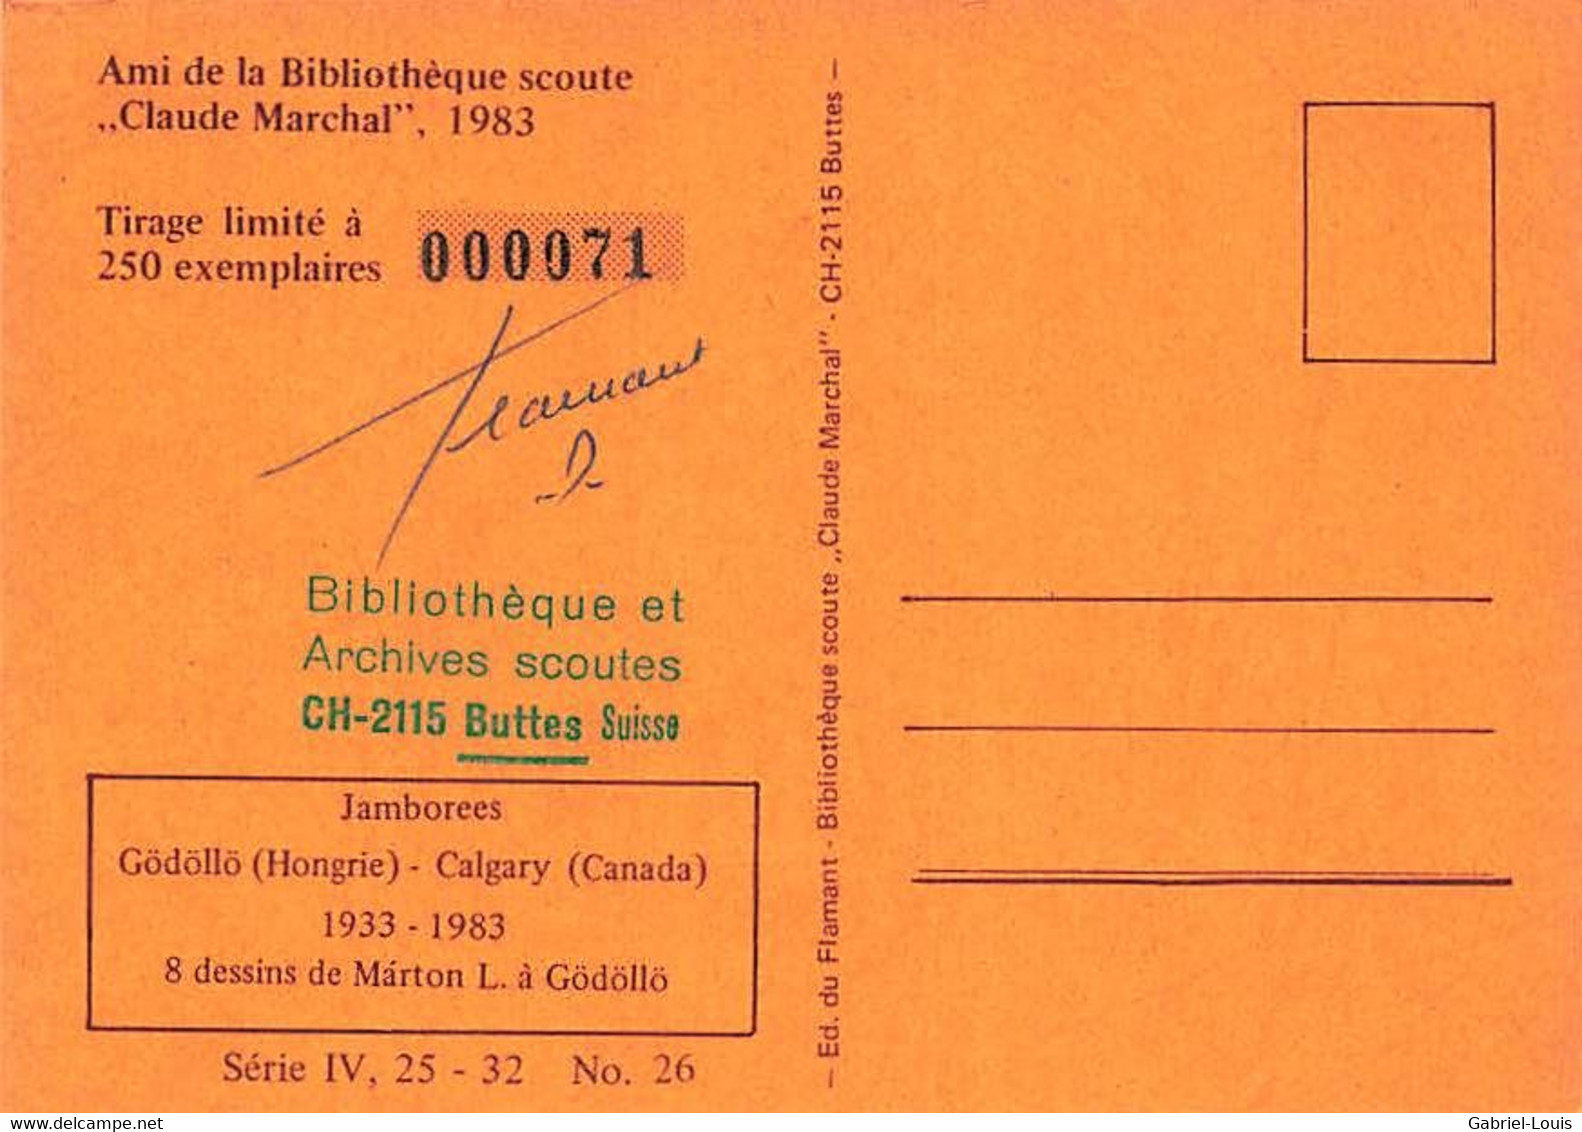 Bibliothèque Scoute Claude Marchal Tirage Limité No 71 Jamborée Gödöllo Hongrie Calgary Marton Buttes 1983  10X15 - Scoutisme